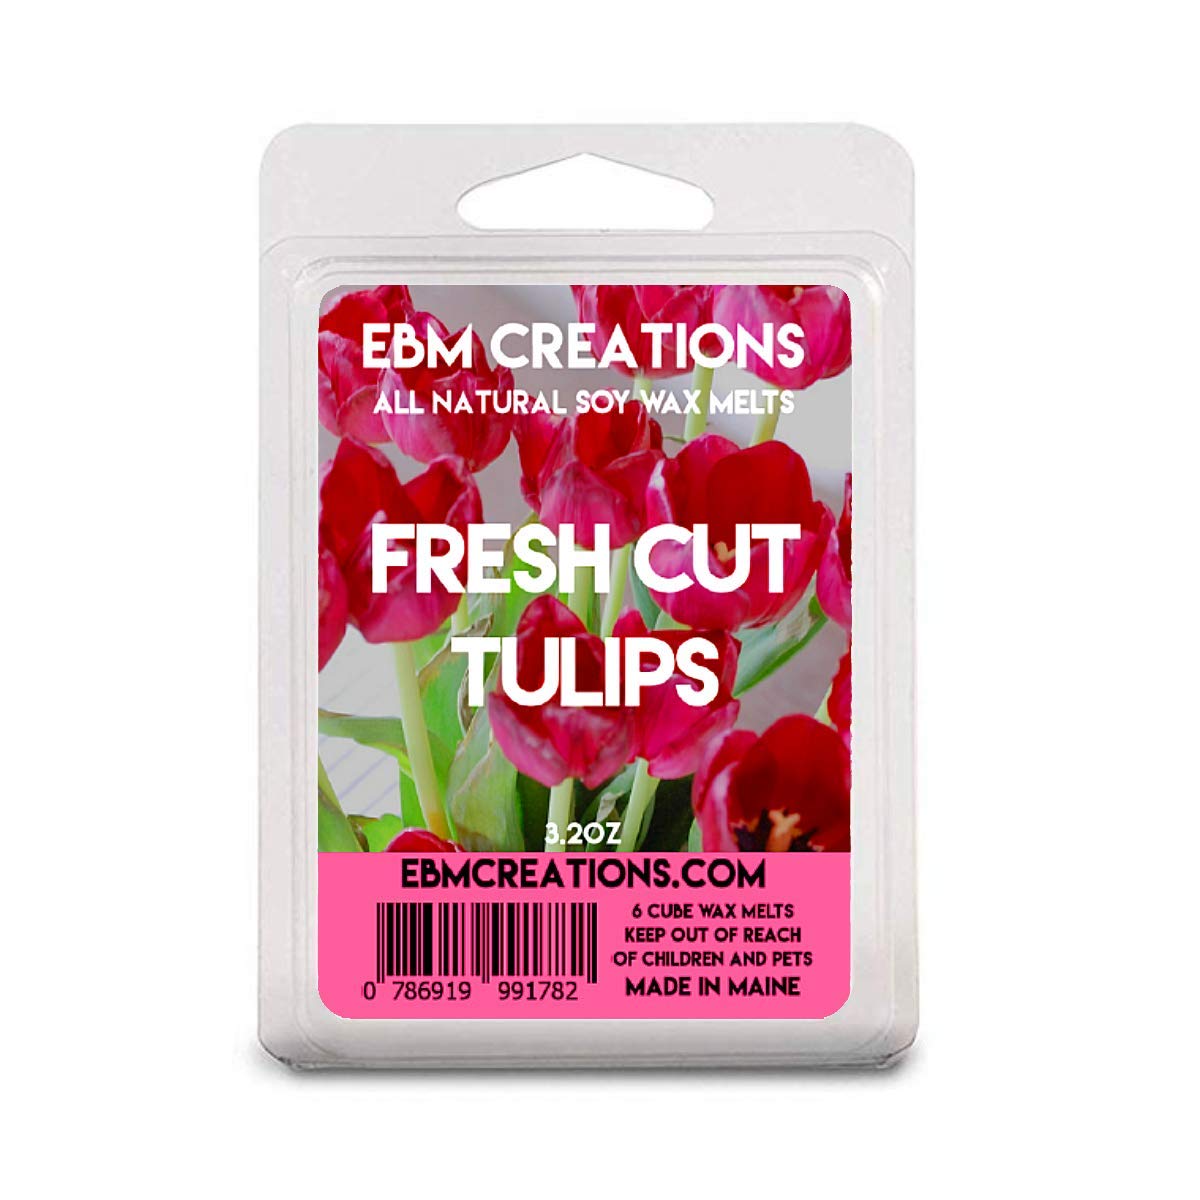 Fresh Cut Tulips - 3.2 oz Clamshell